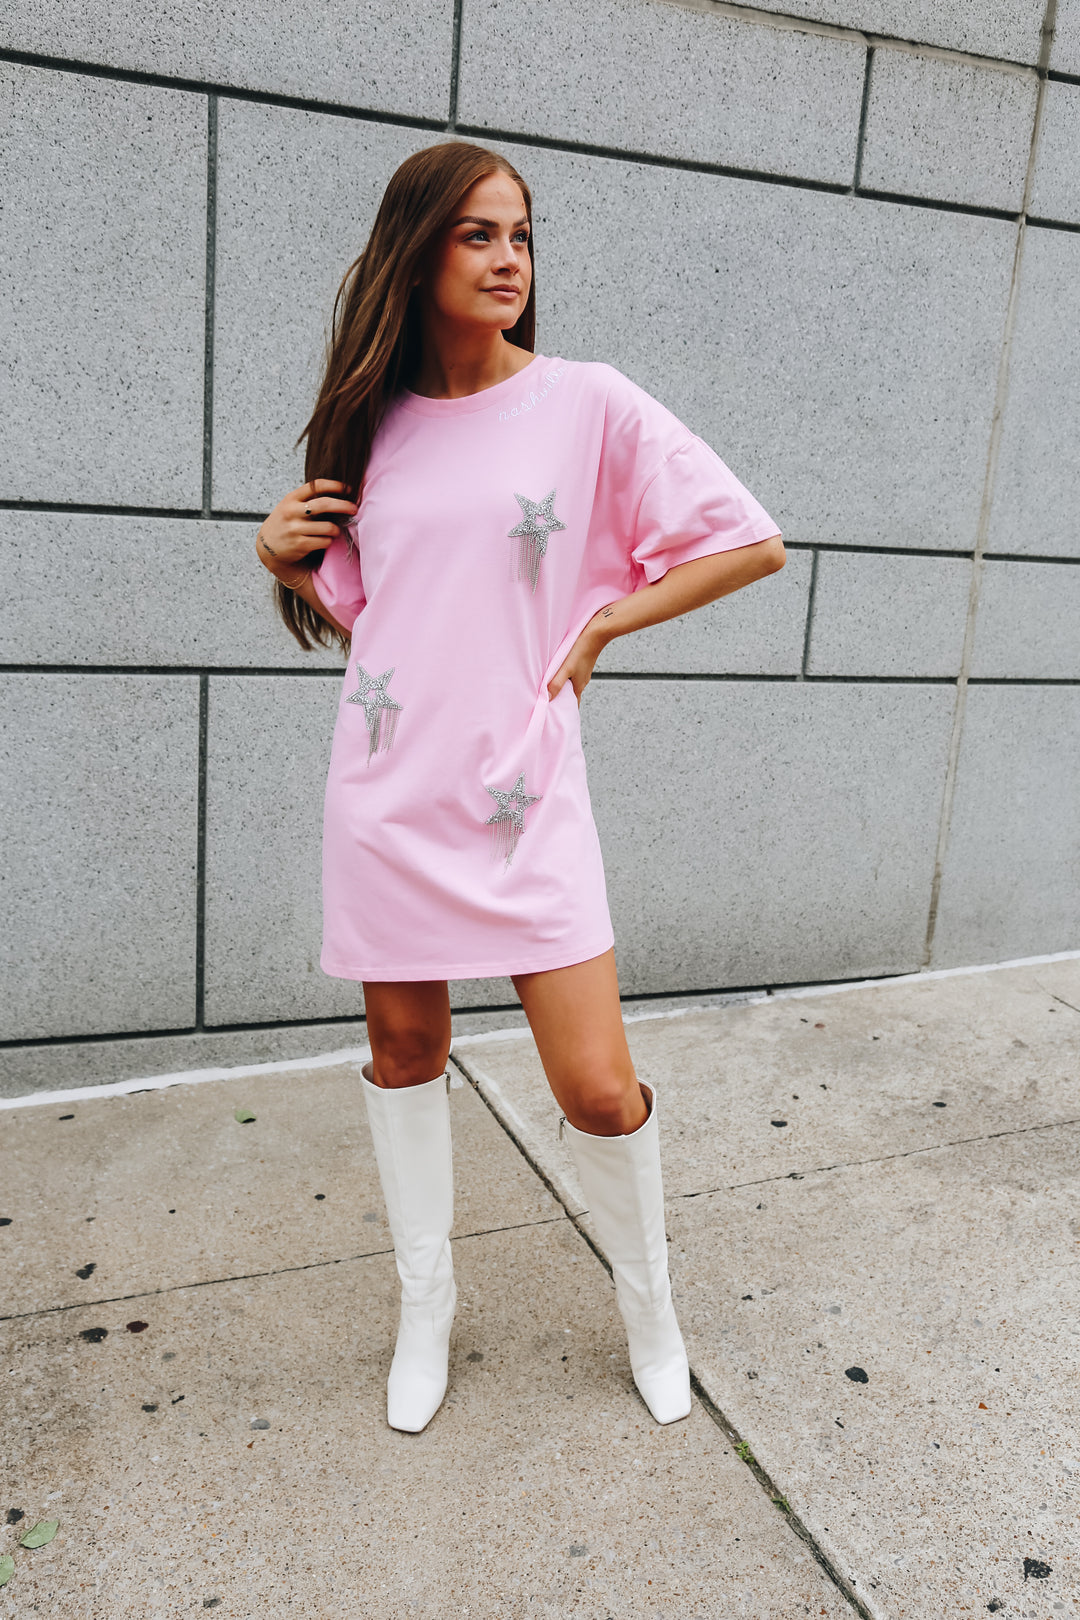 Star Struck Shirt Dress [Pink]